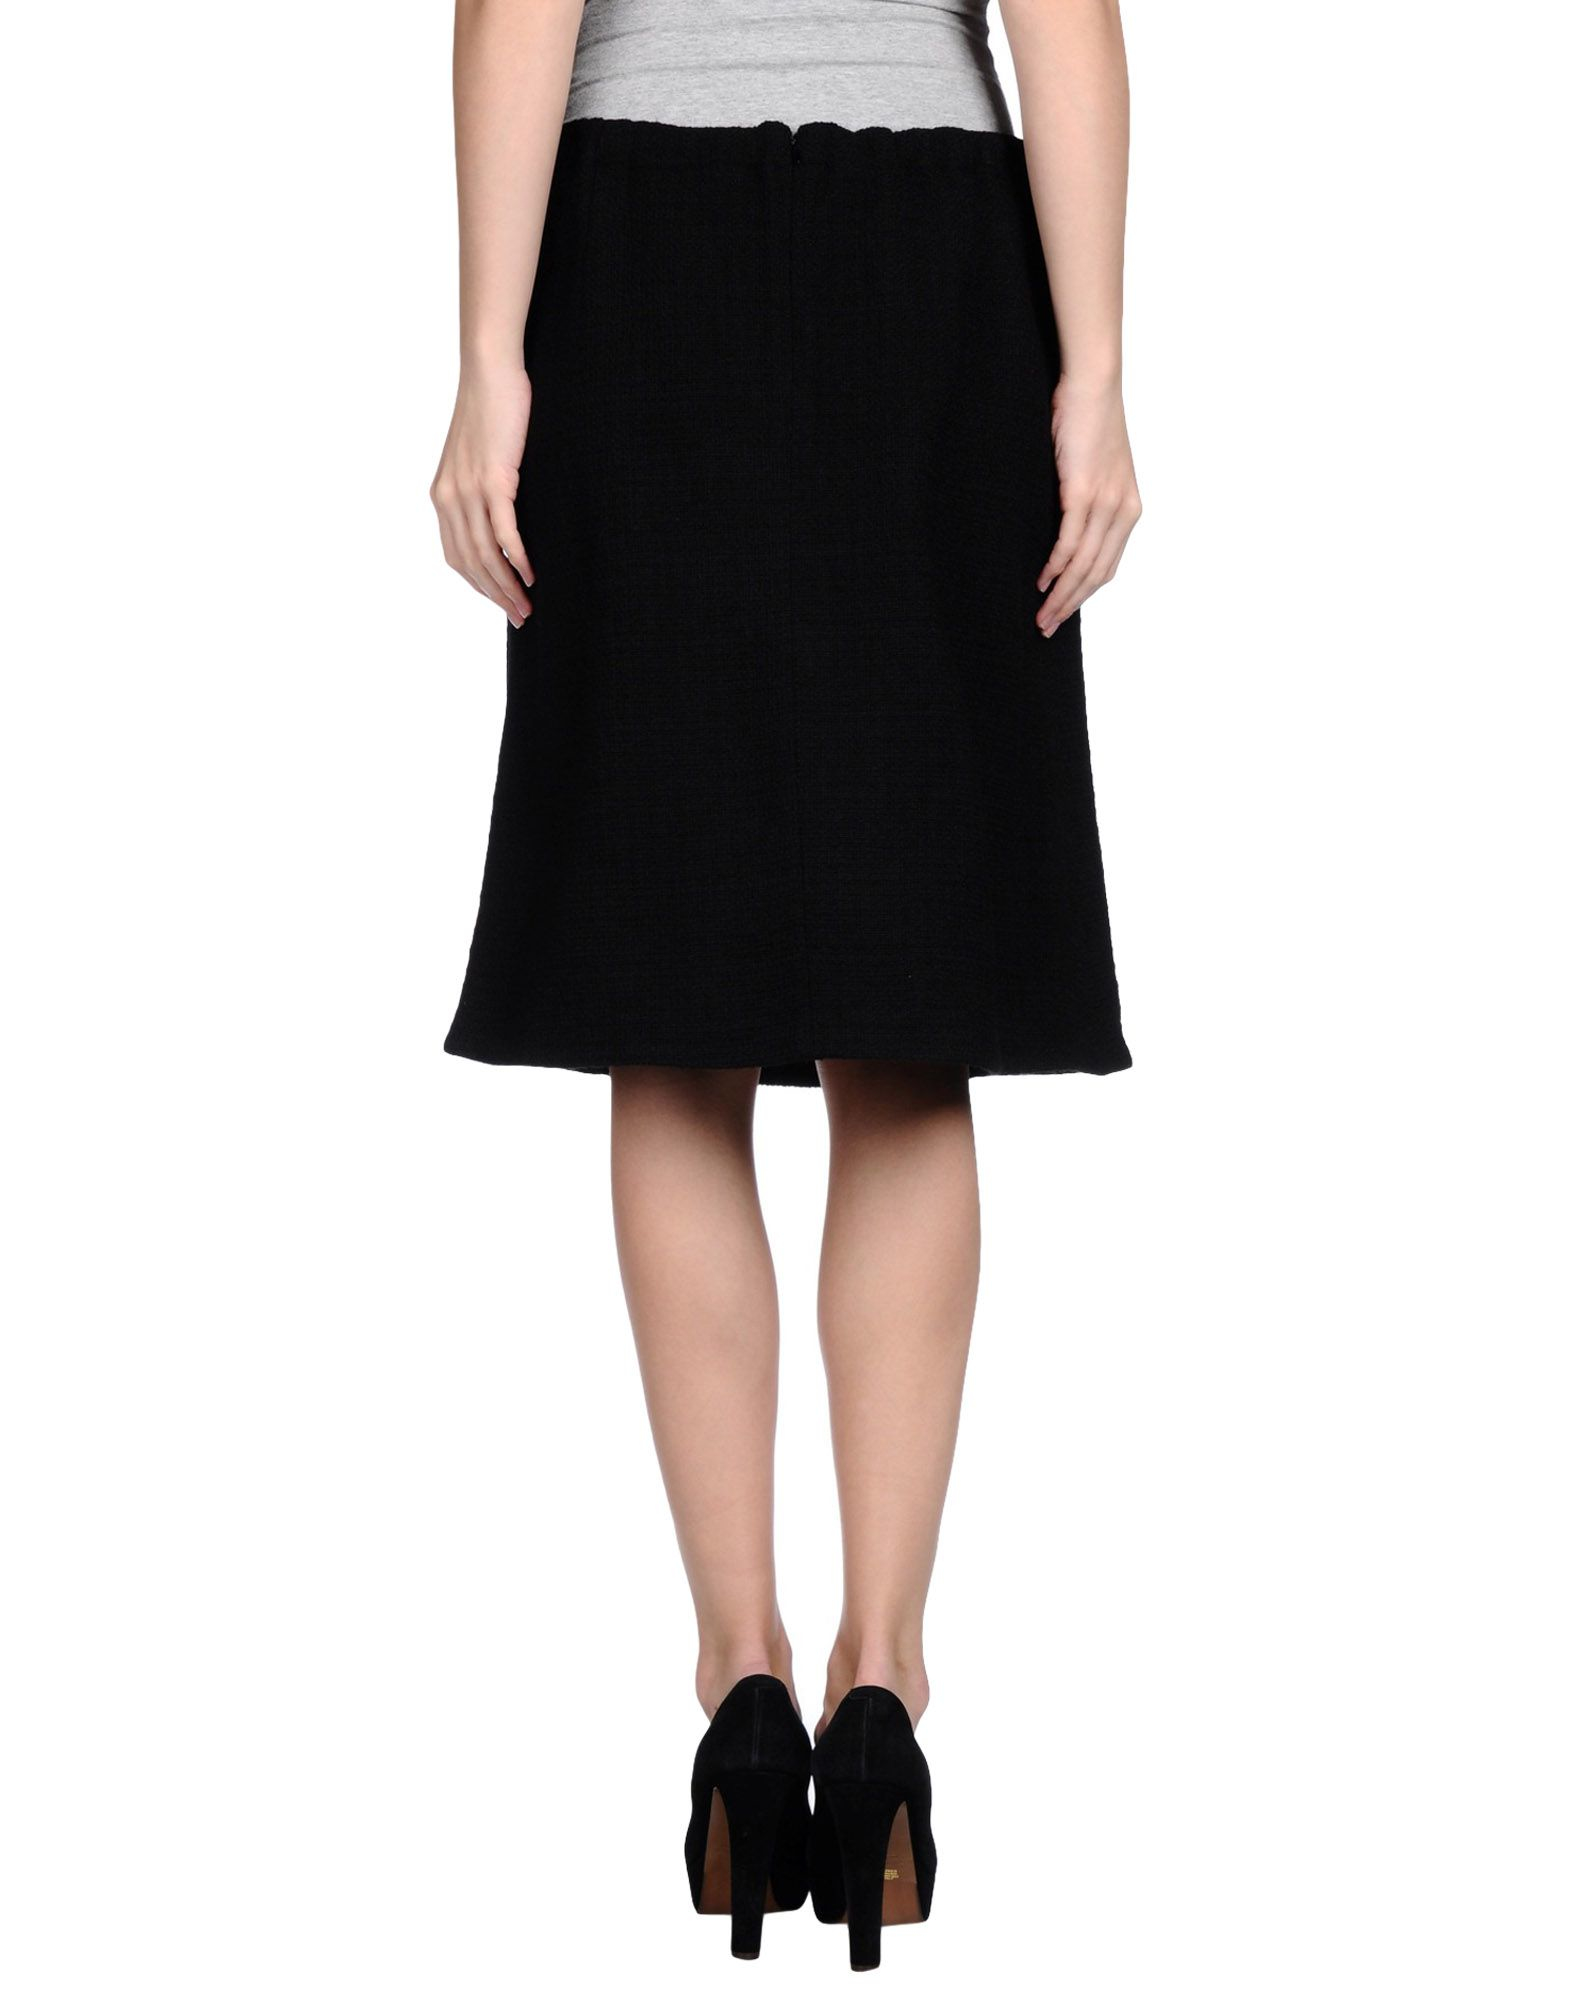 Marni Flannel Knee Length Skirt in Black - Lyst